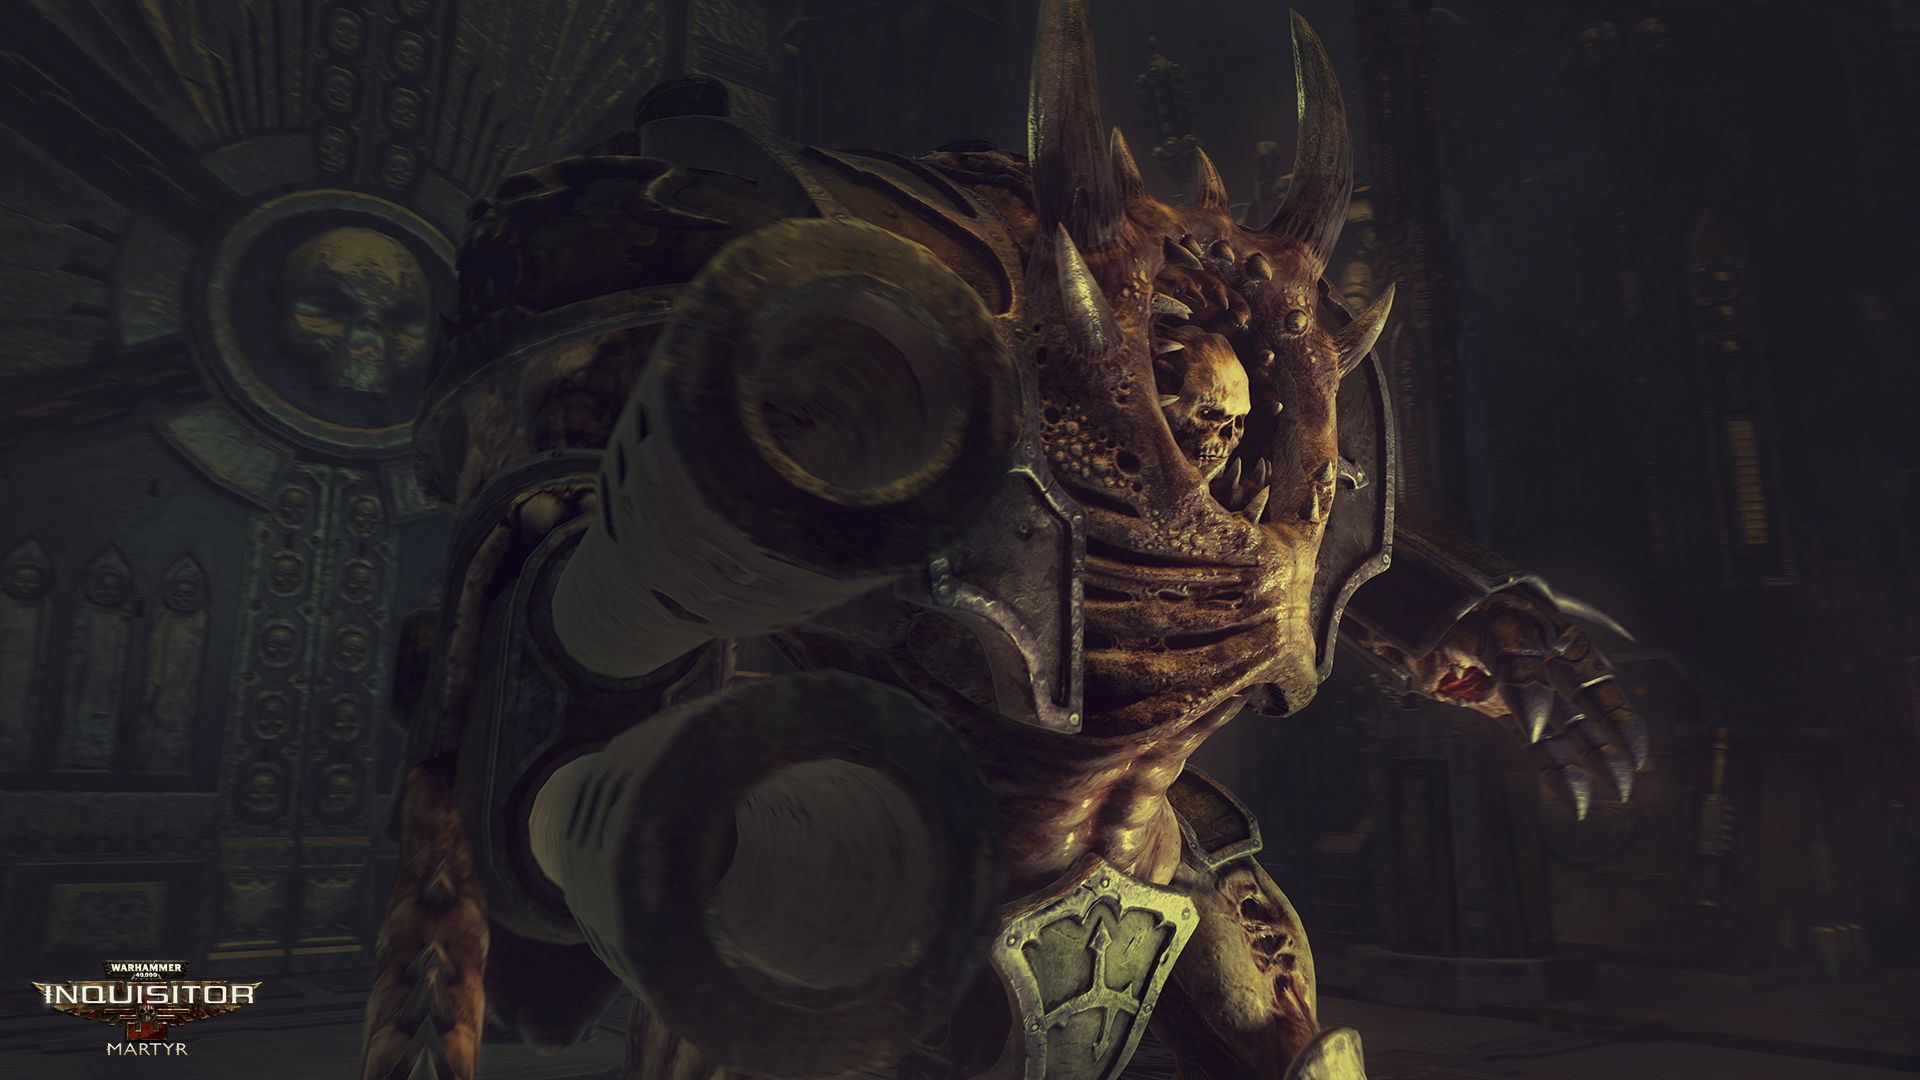 Warhammer 40,000: Inquisitor - Martyr Money Hack